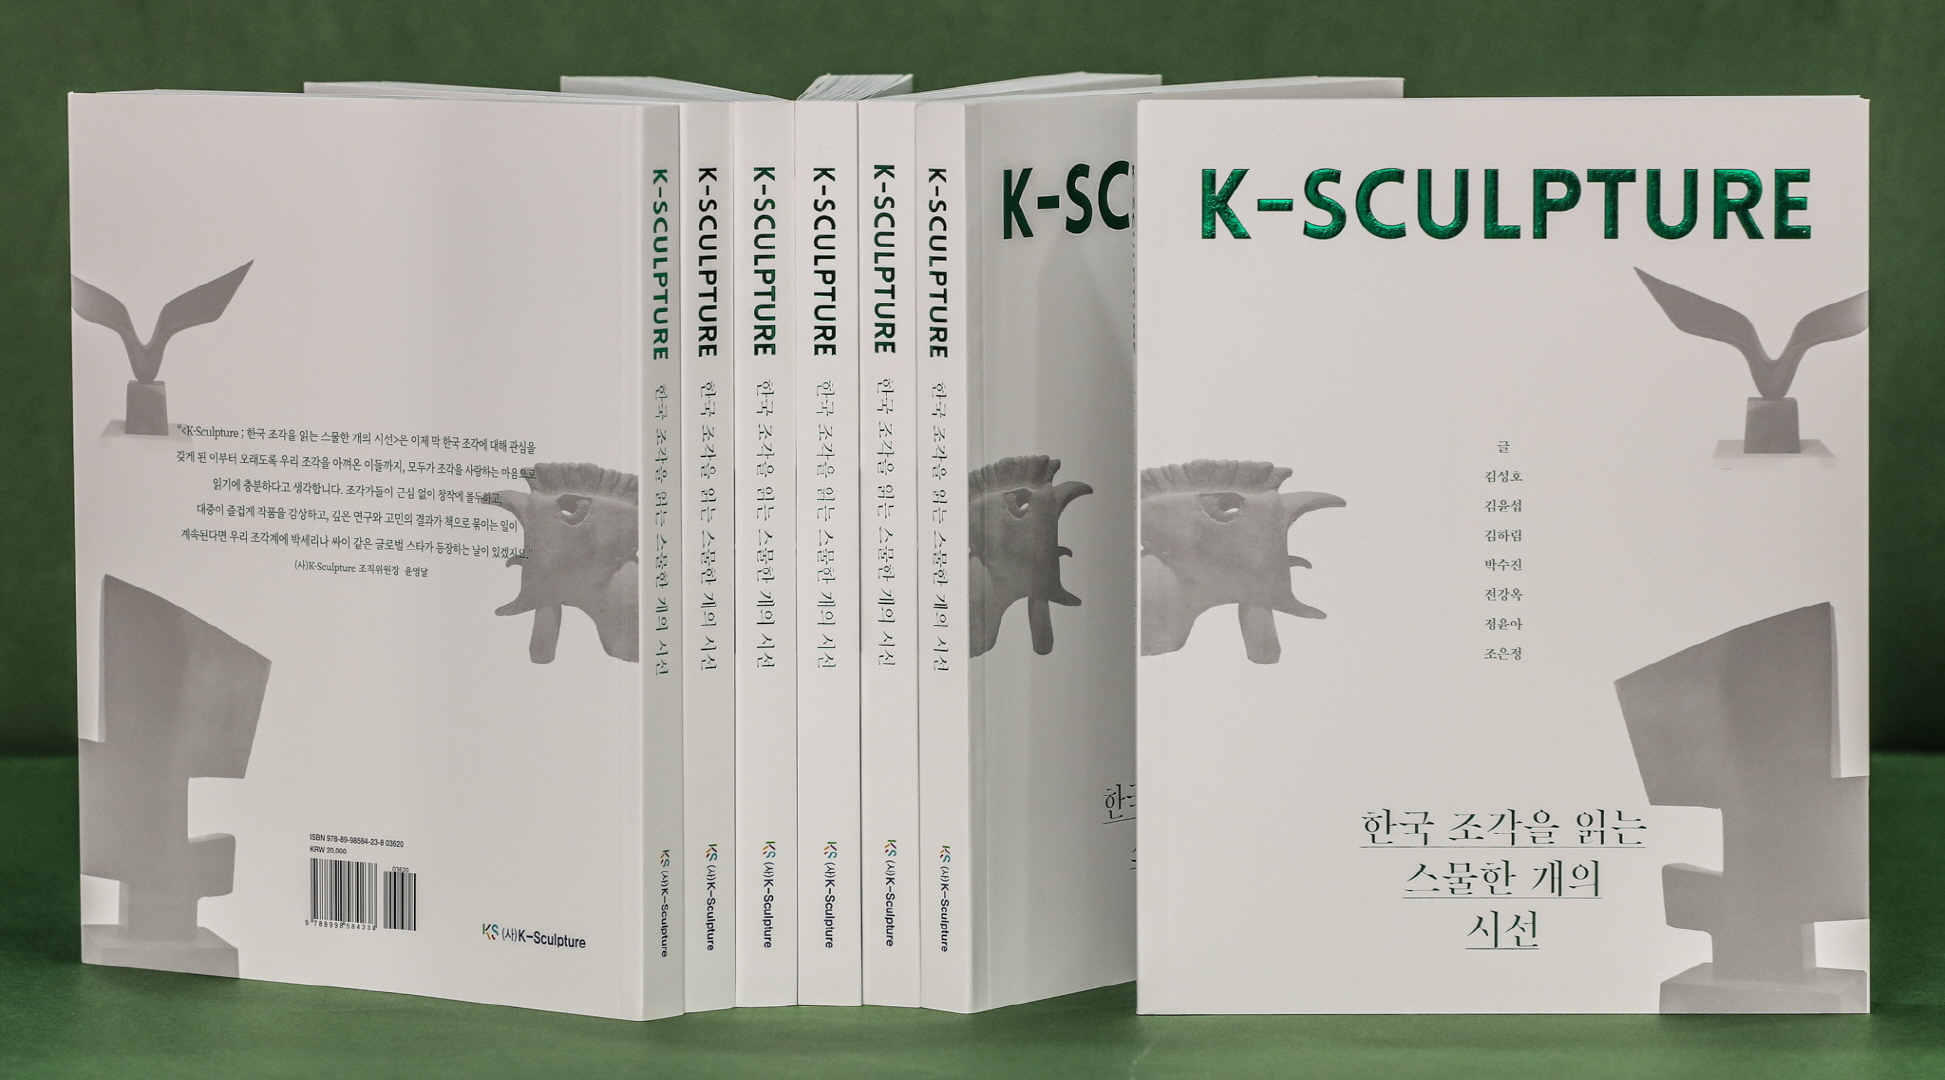 크라운해태가 출간한 조각 전문 도서 ‘K-SCULPTURE 한국 조각을 읽는 스물한 개의 시선’. 크라운해태 제공